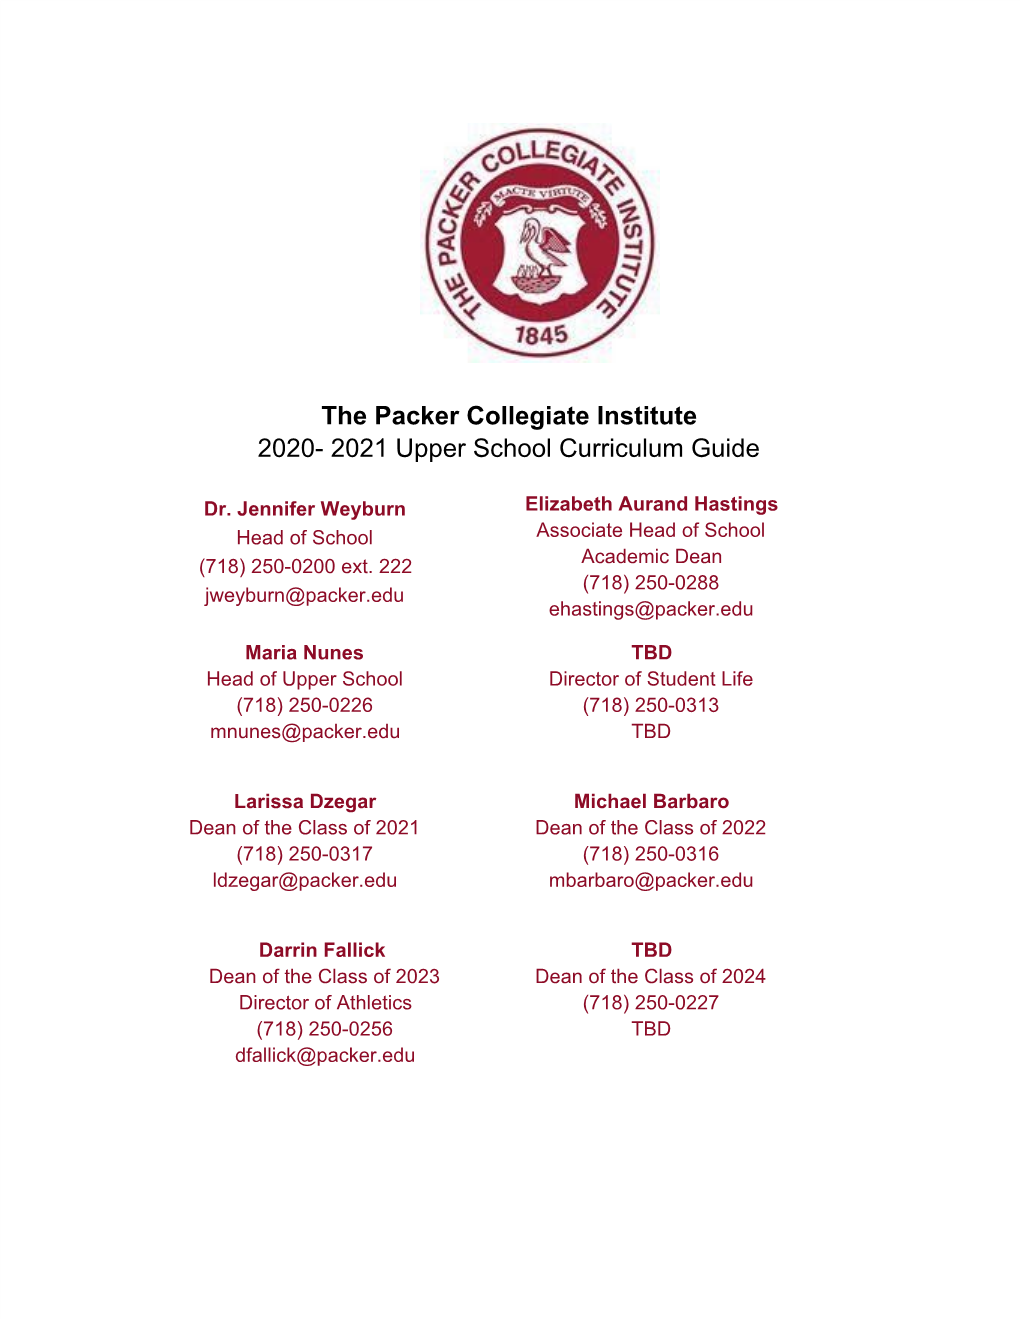 The Packer Collegiate Institute 2020- 2021 Upper School Curriculum Guide